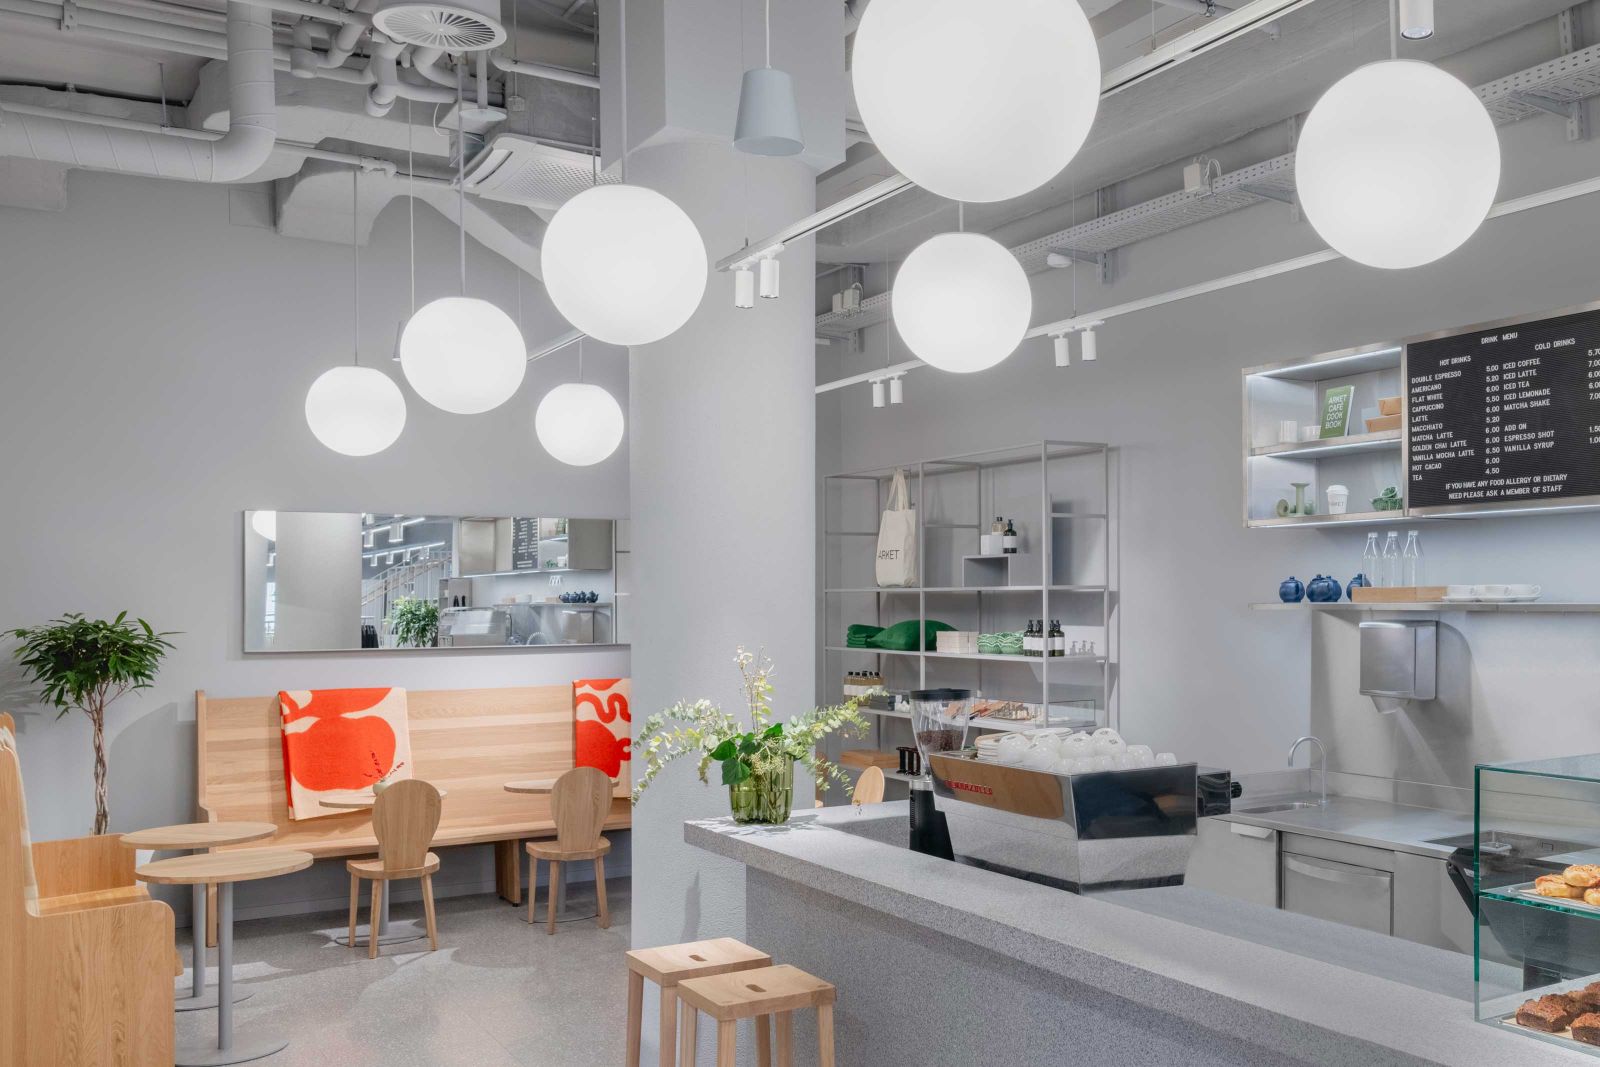 Arket bietet nordische Wohnaccessoires, Lifestyleprodukte und ein Café unter einem Dach.